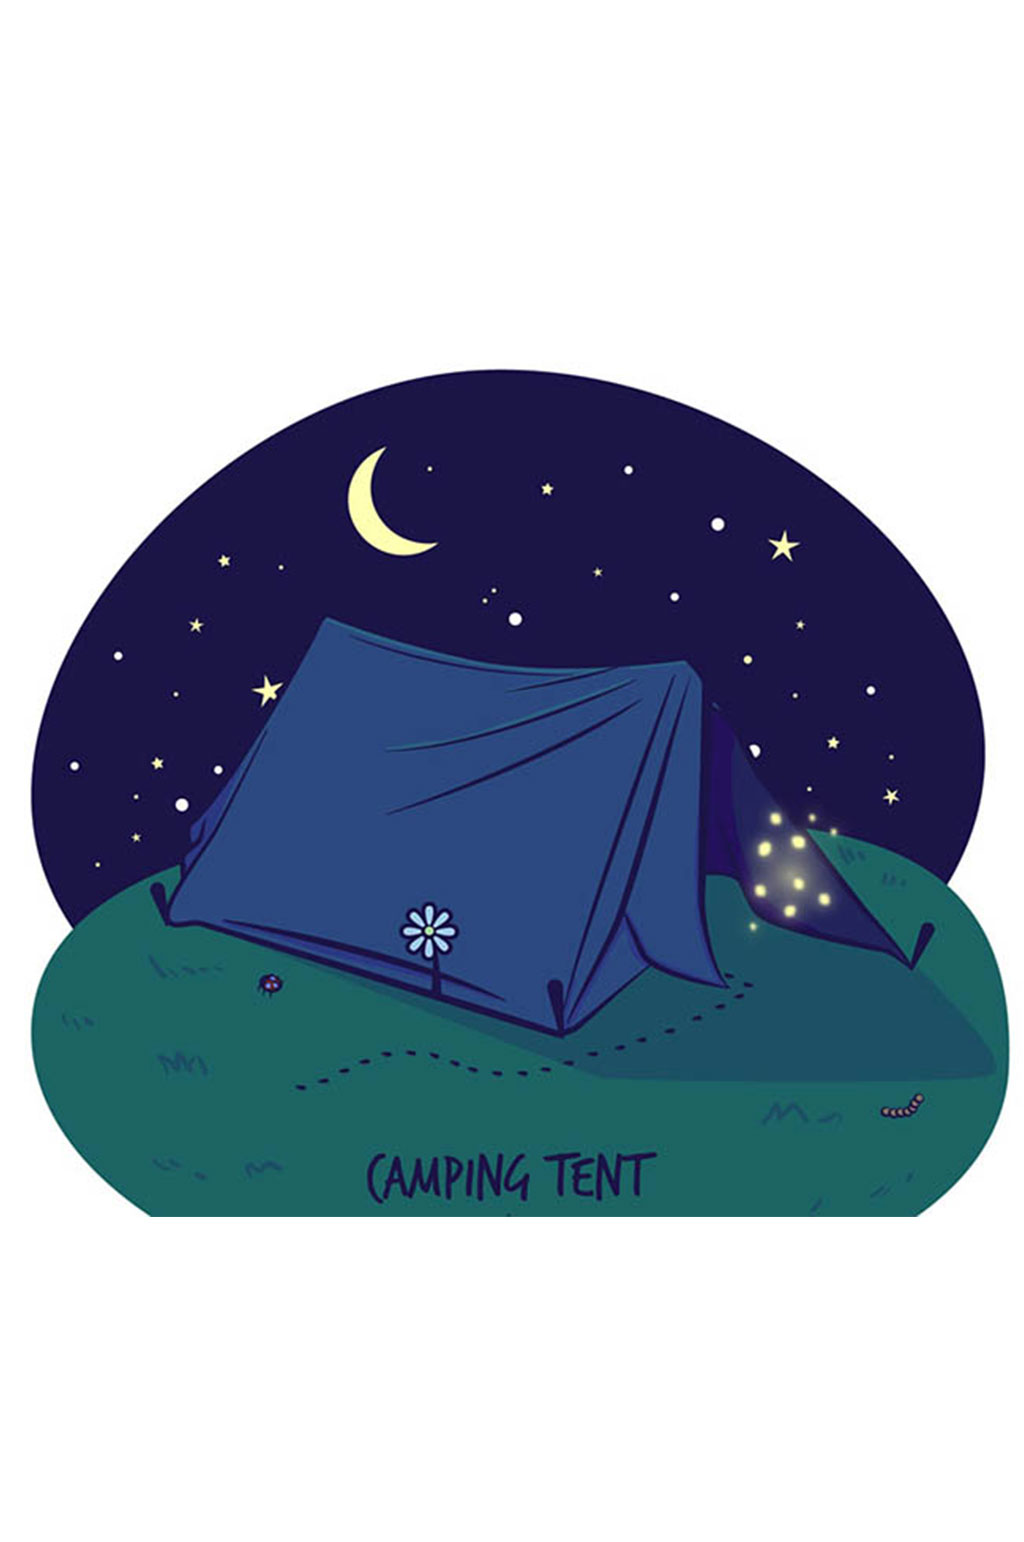 夜晚的郊外野营帐篷插画矢量素材素材